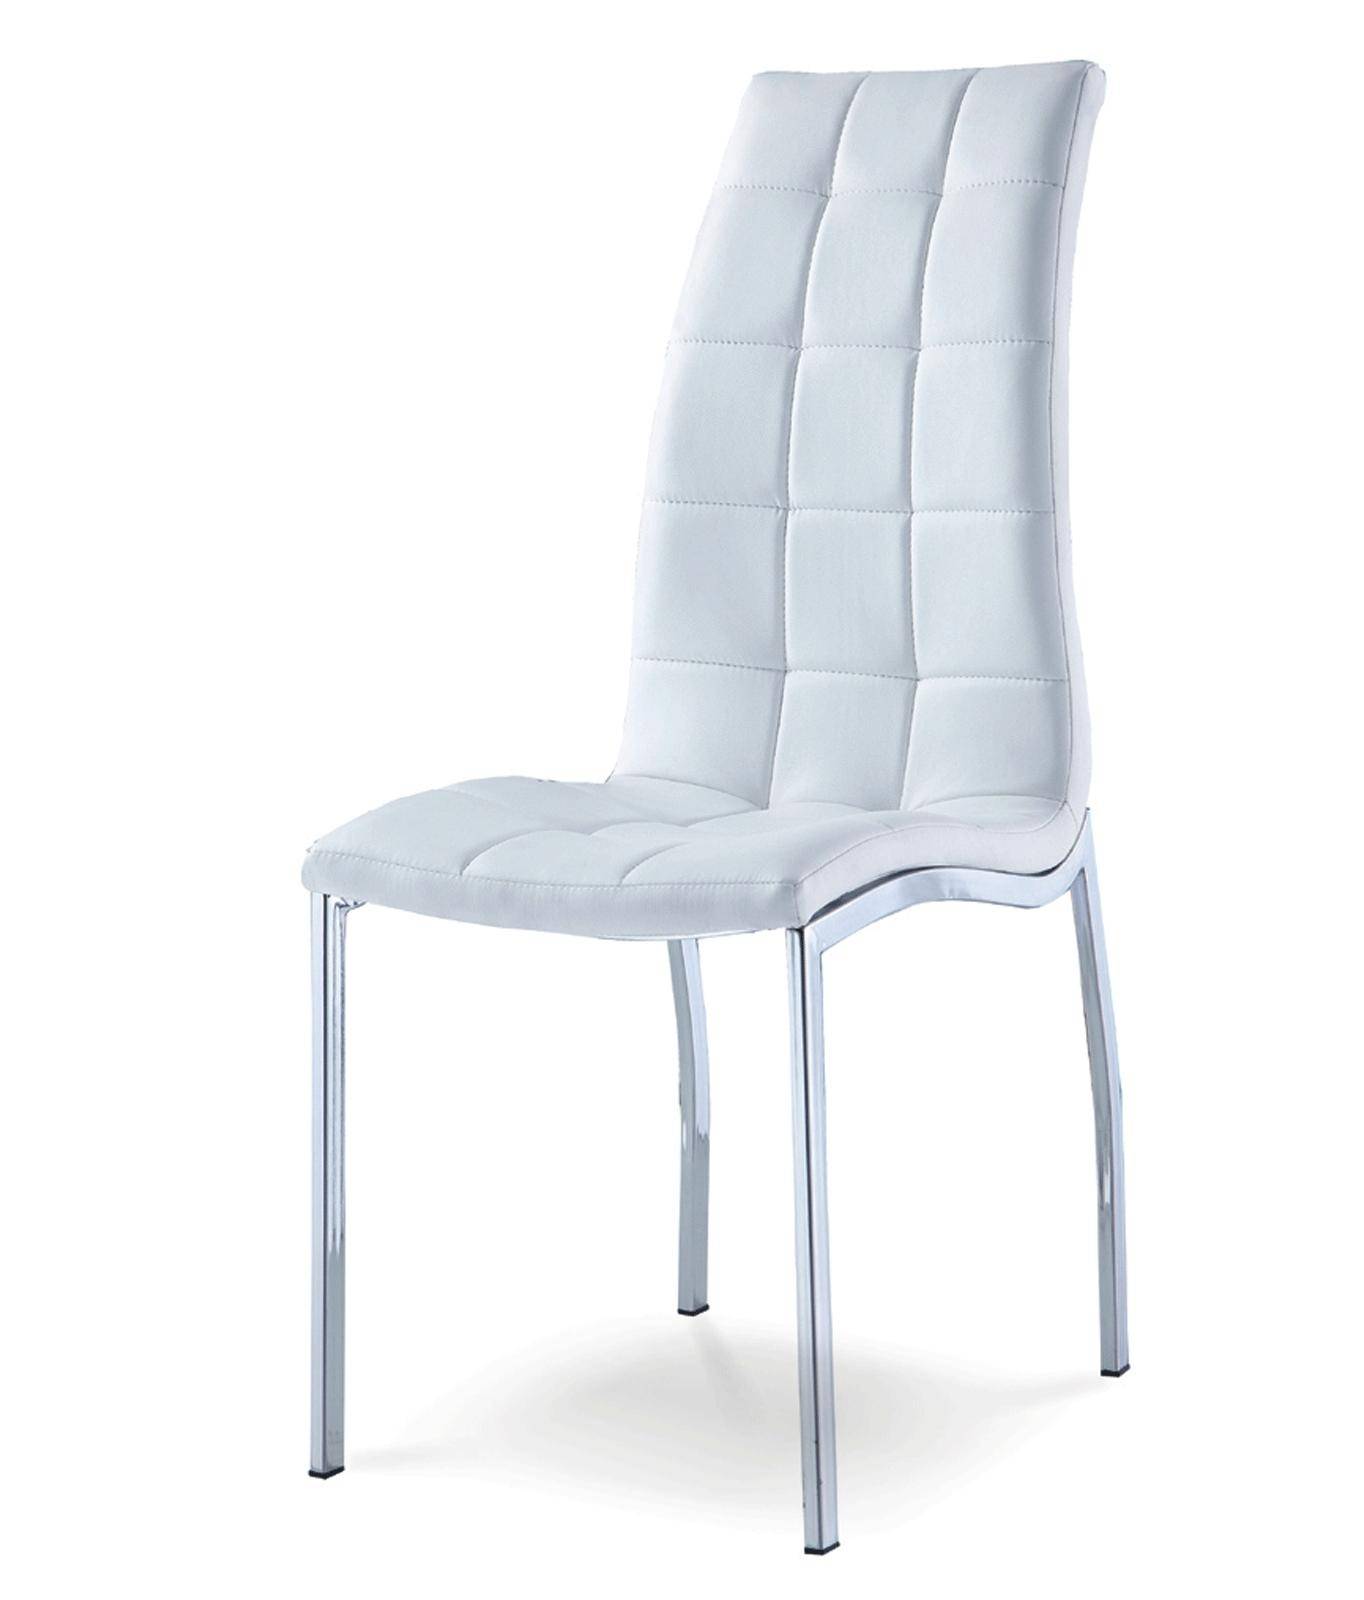 Купить кухонные стулья в минске. Стул ESF dc365 белый. Стул dc365 (белый). Стул DC-8718. Стул ESF ft185 бежевый.